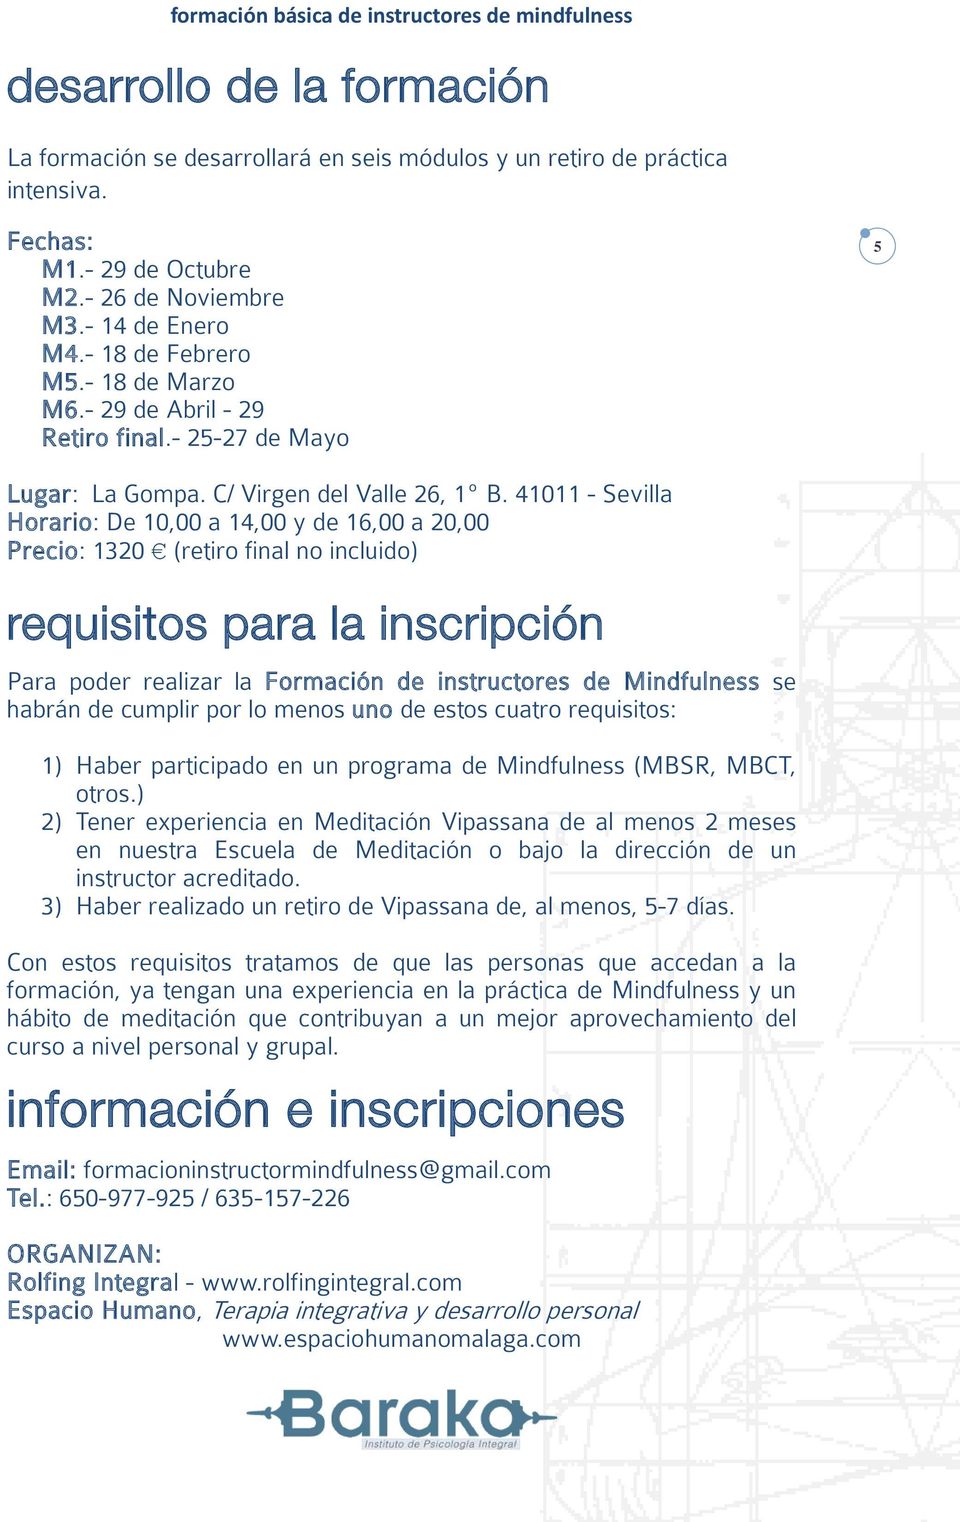 41011 - Sevilla Horario: De 10,00 a 14,00 y de 16,00 a 20,00 Precio: 1320 (retiro final no incluido) requisitos para la inscripción Para poder realizar la Formación de instructores de Mindfulness se